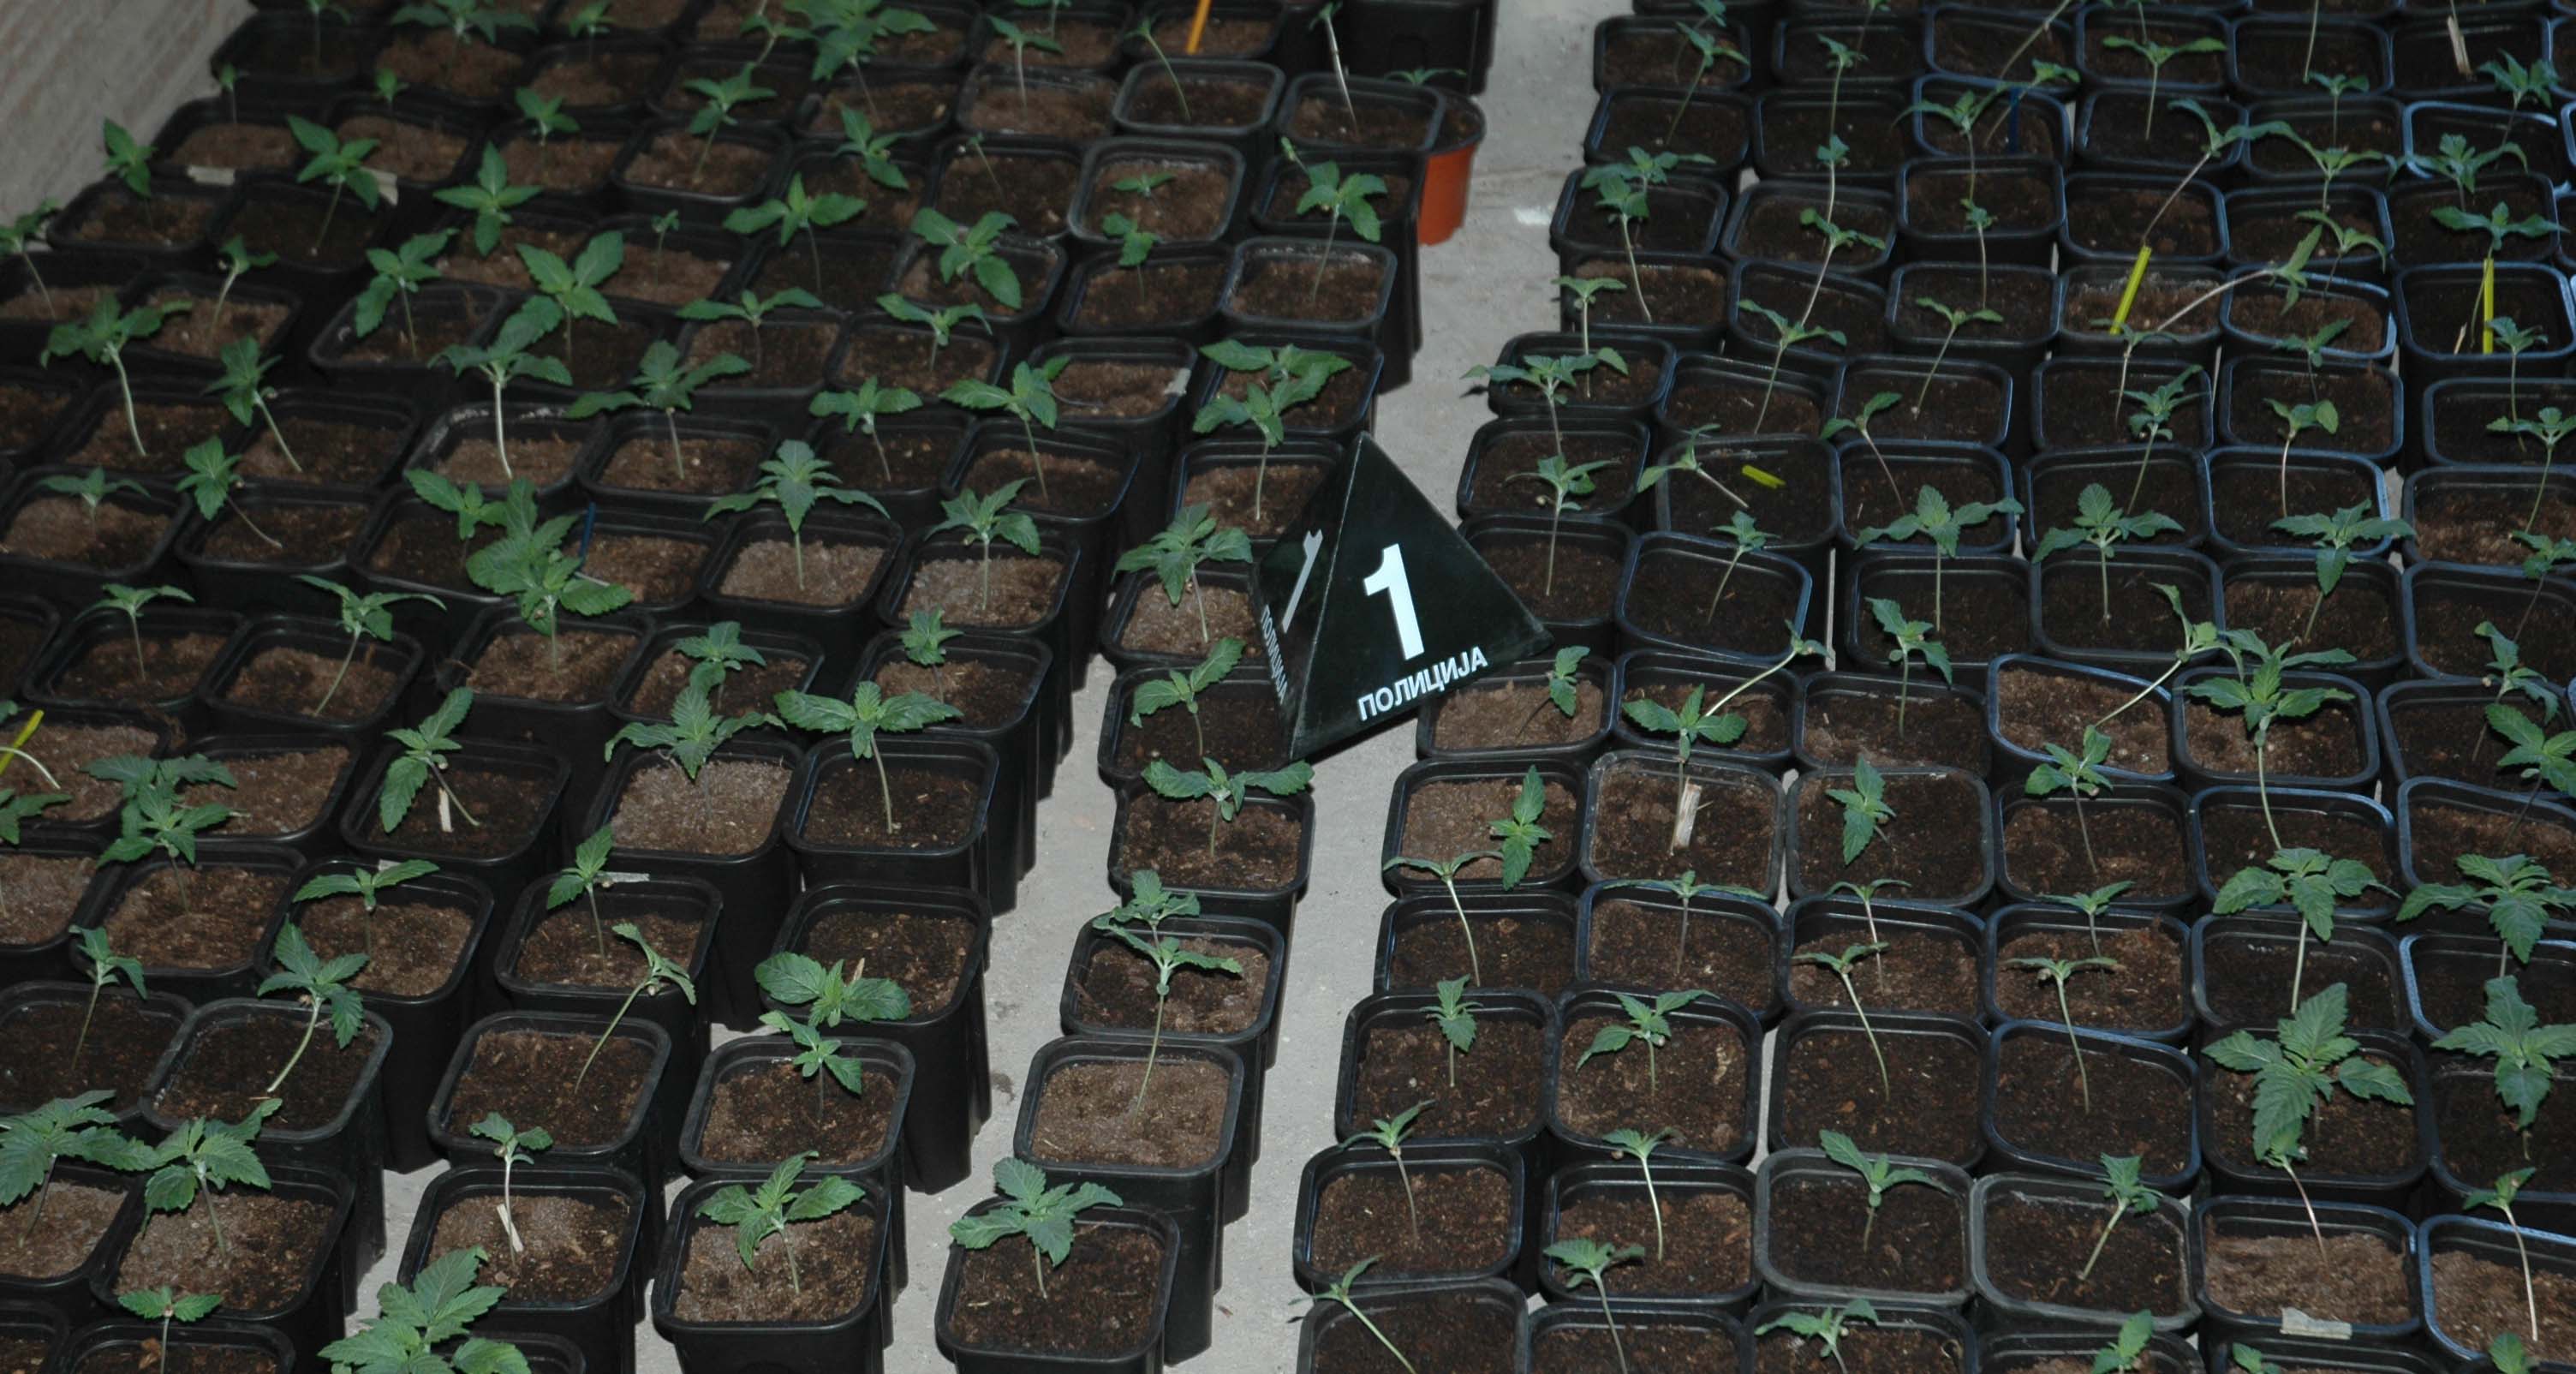 Otkrivena laboratorija za uzgoj marihuane, uhapšene dve osobe